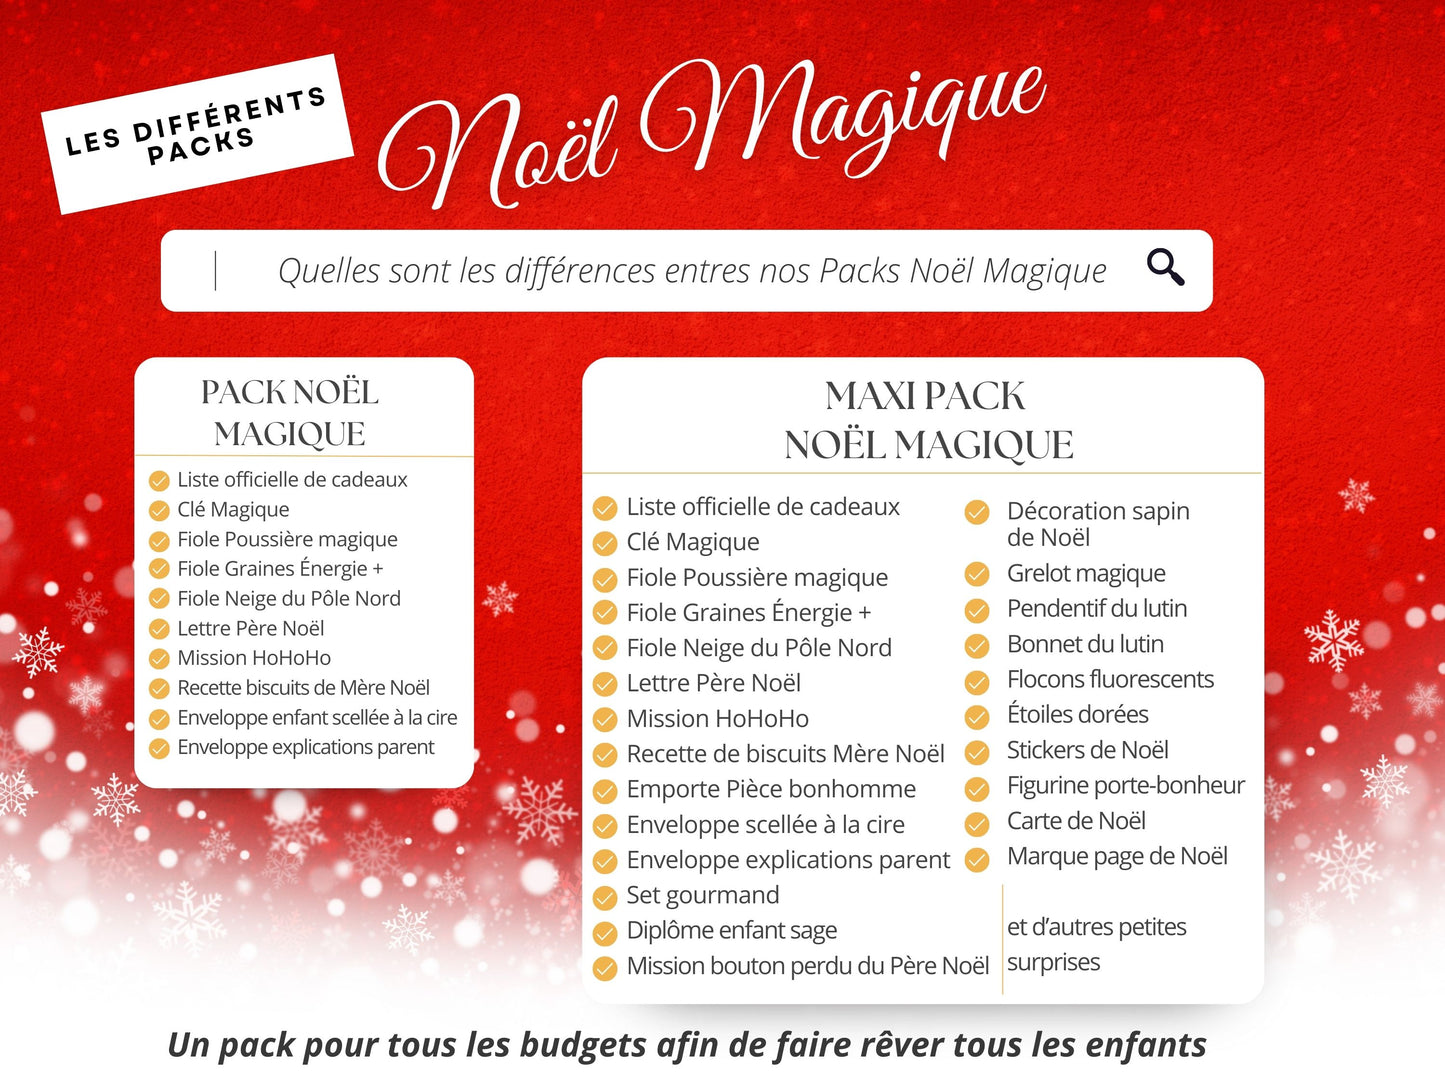 MAXI pack Magie de Noël - Vivez l’expérience de Noël avec toute sa magie